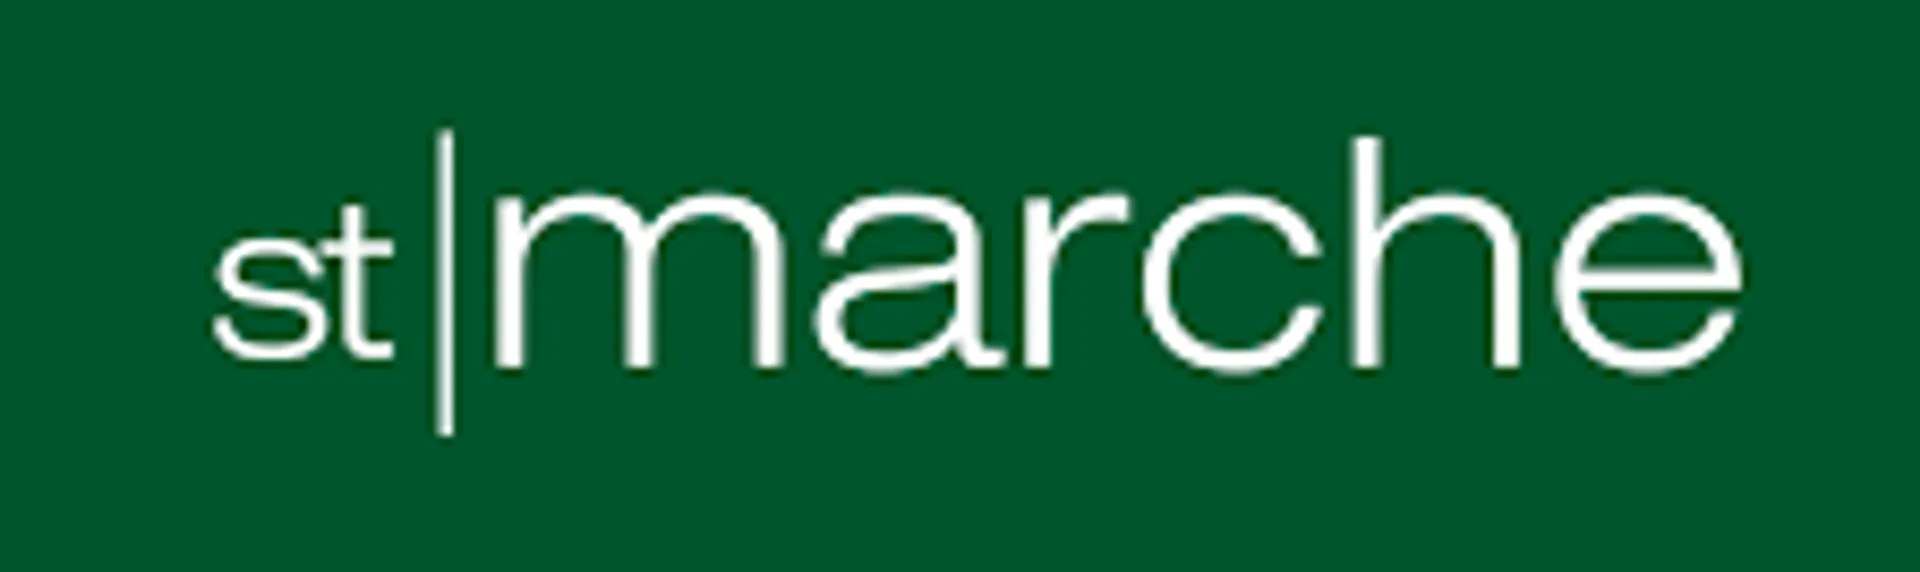 ST MARCHE logo